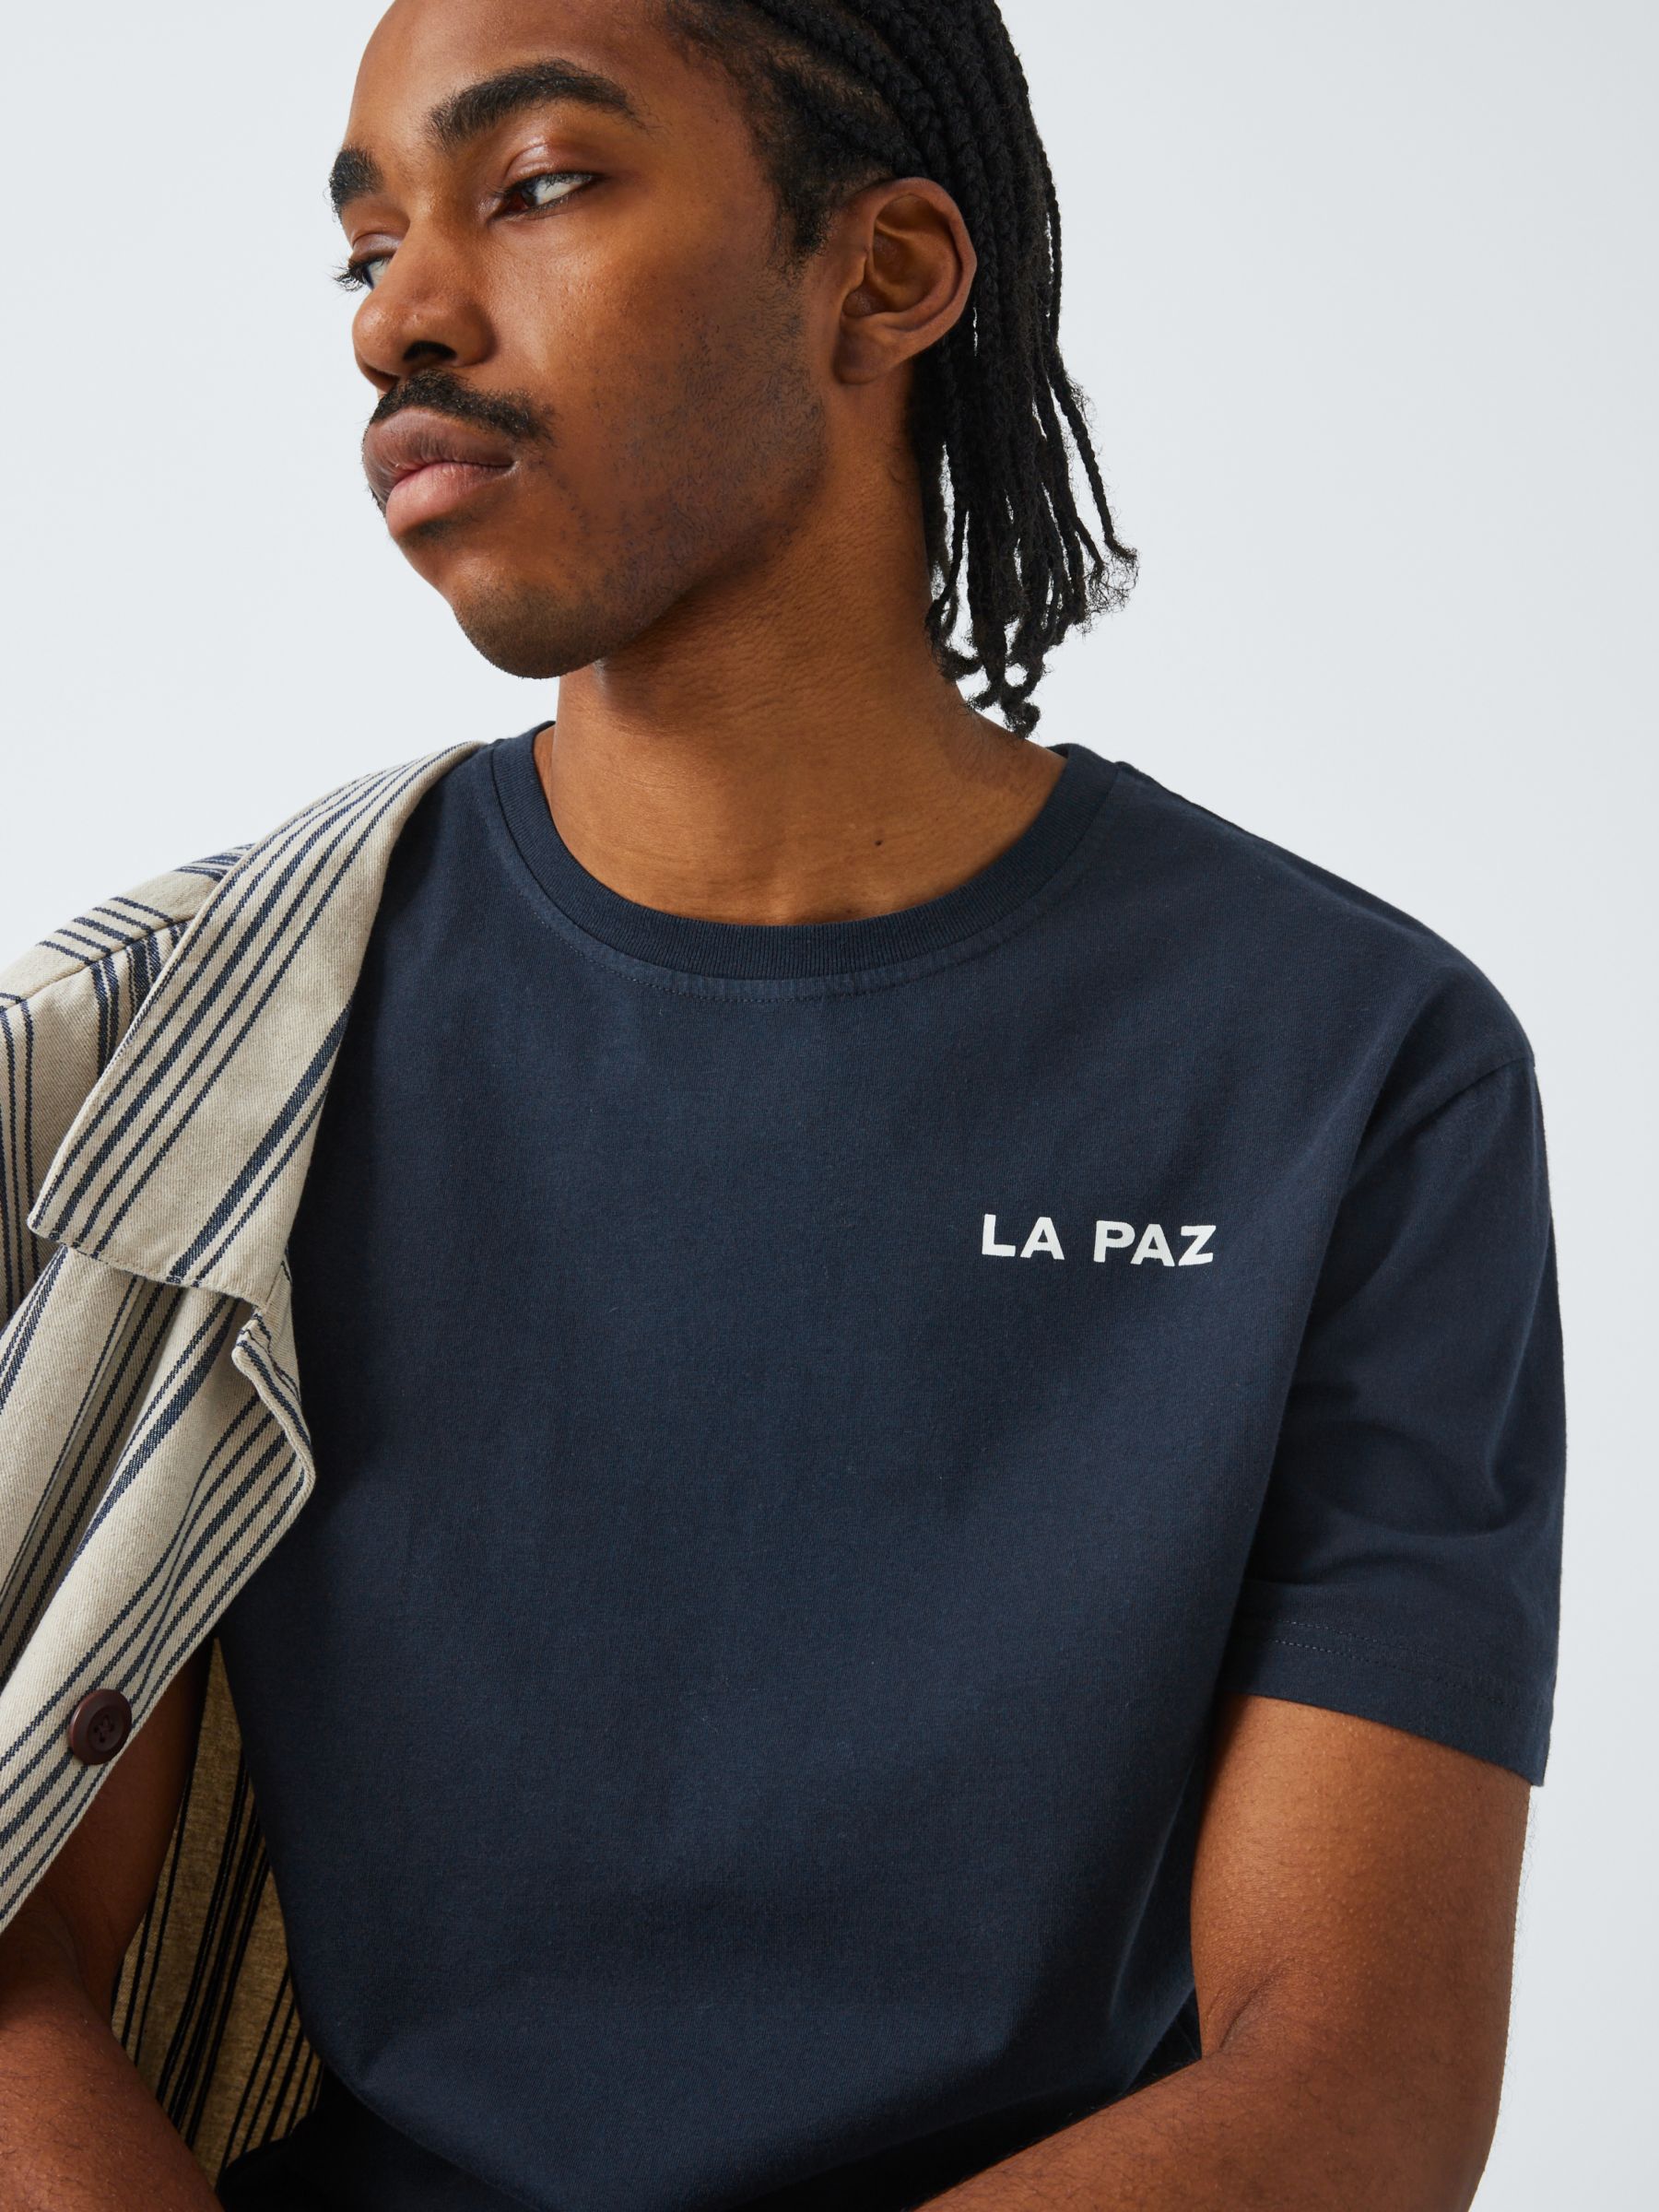 La Paz Print T-Shirt, Dark Navy, S